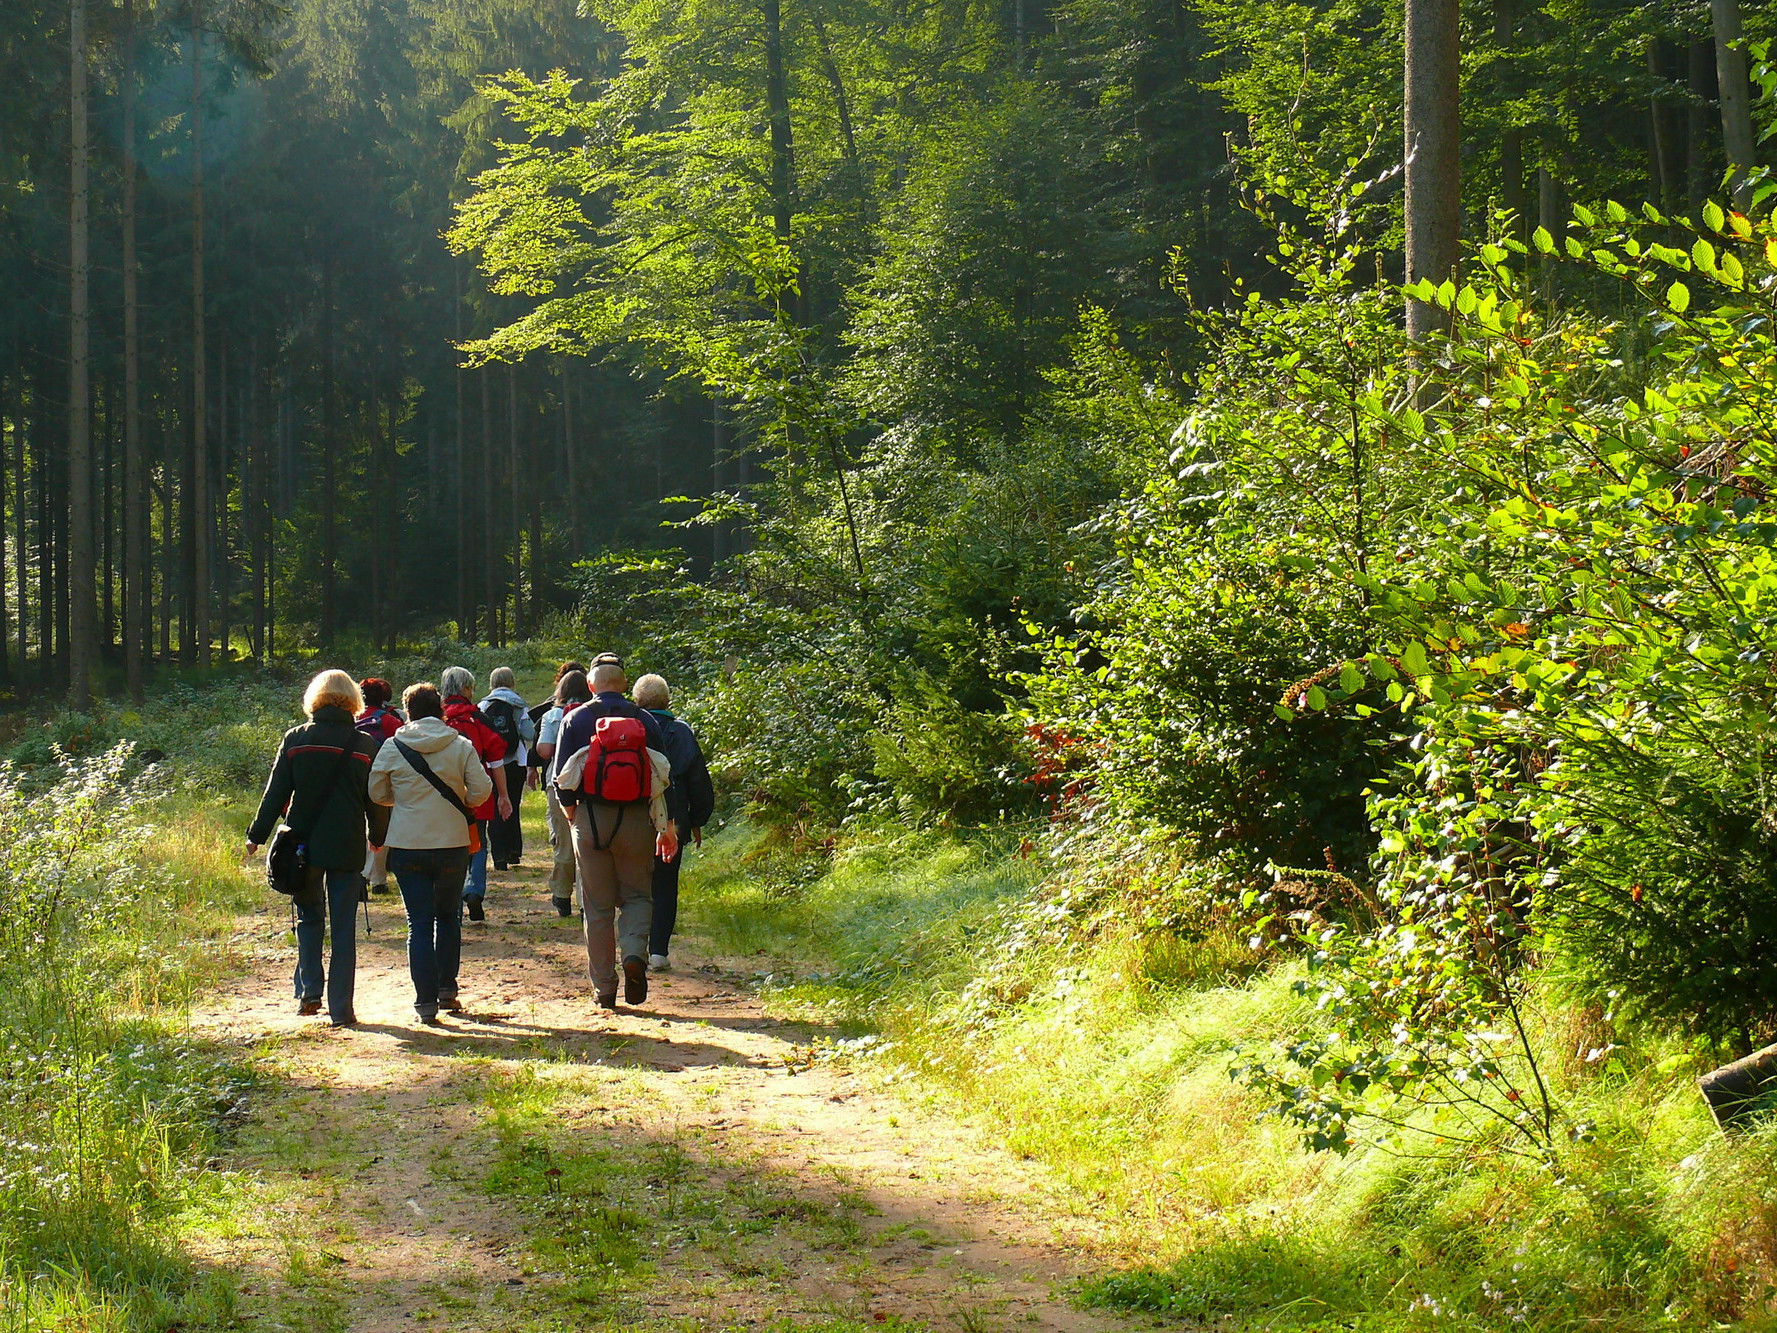 Wanderung durch den Wald mit mehreren Personen